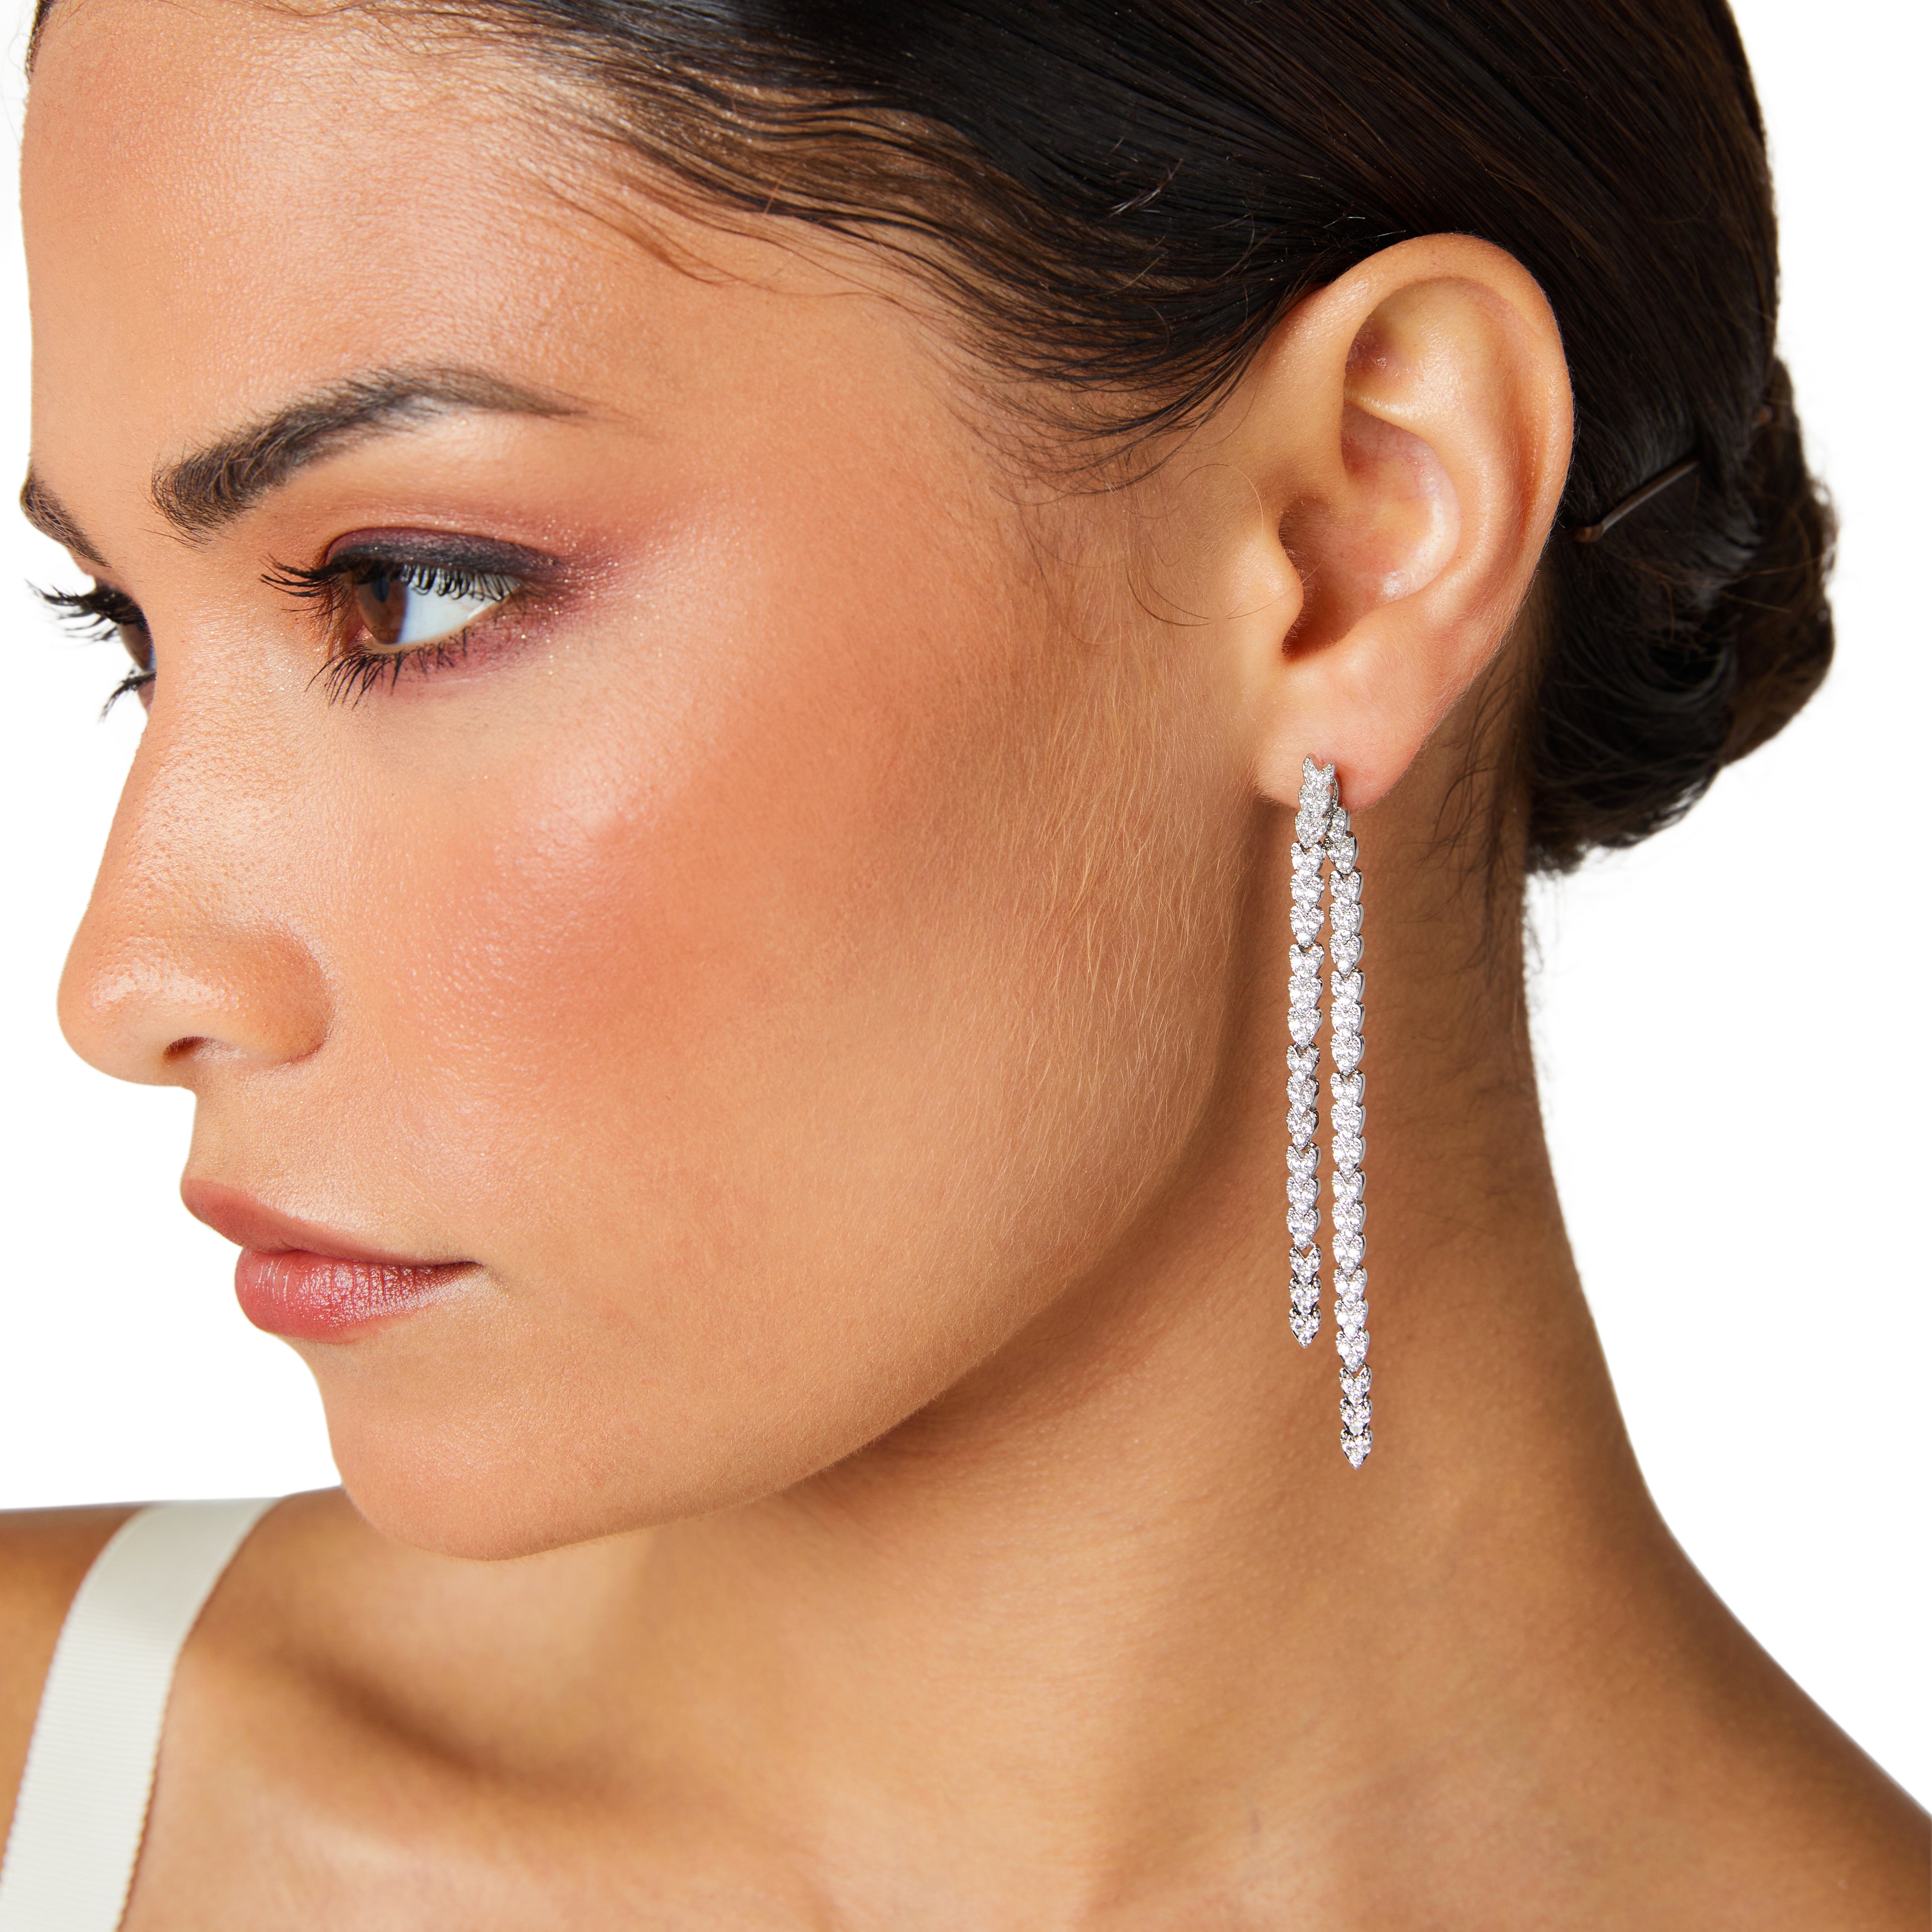 Silver earrings, long earrings, wedding earrings, long drop earrings, front to back earrings, going out earrings